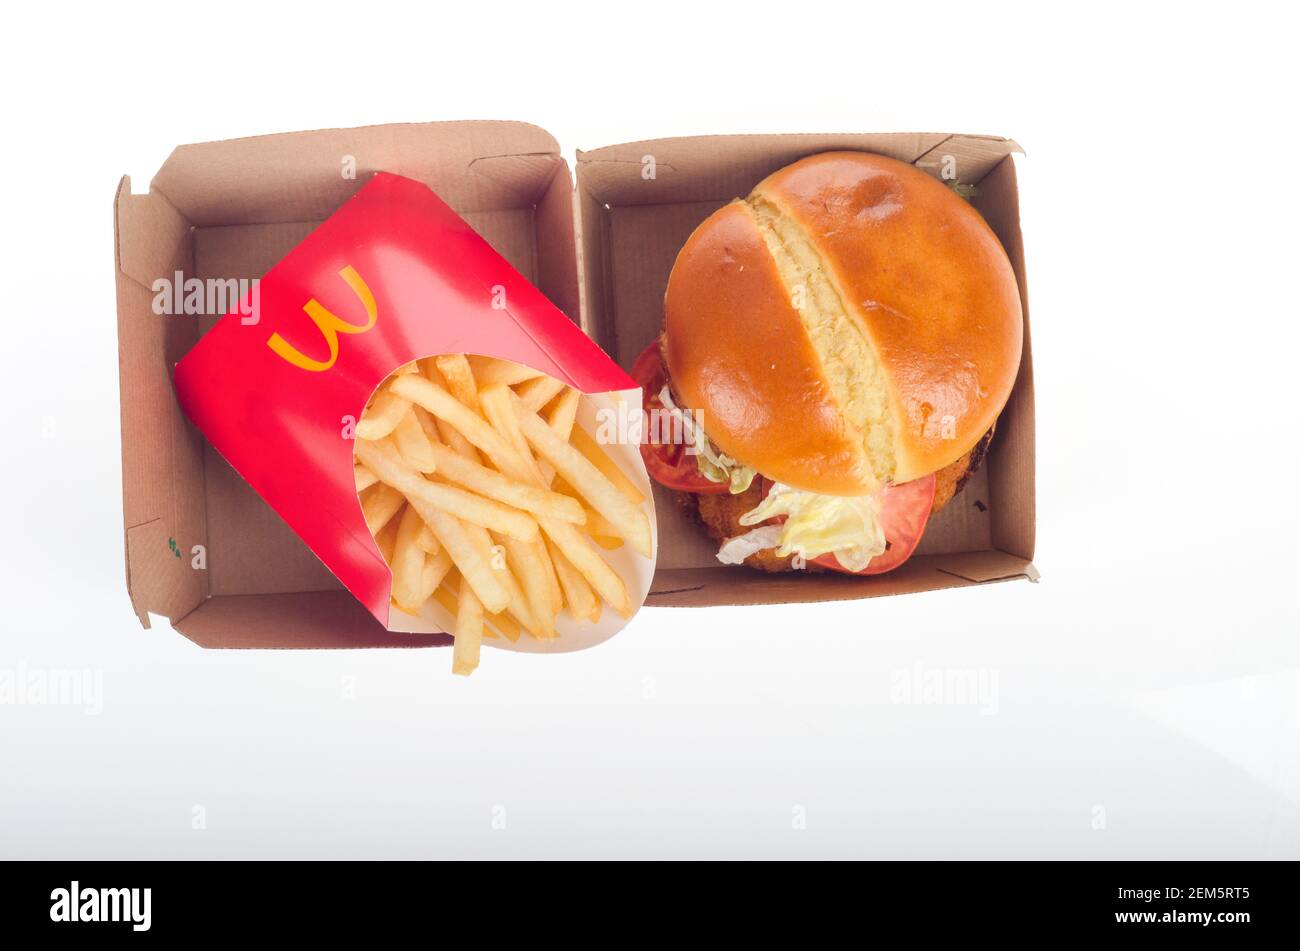 McDonalds neues Crispy Chicken Sandwich Deluxe mit pommes Frites & Box. Veröffentlicht am 24th. Februar 2021 Stockfoto